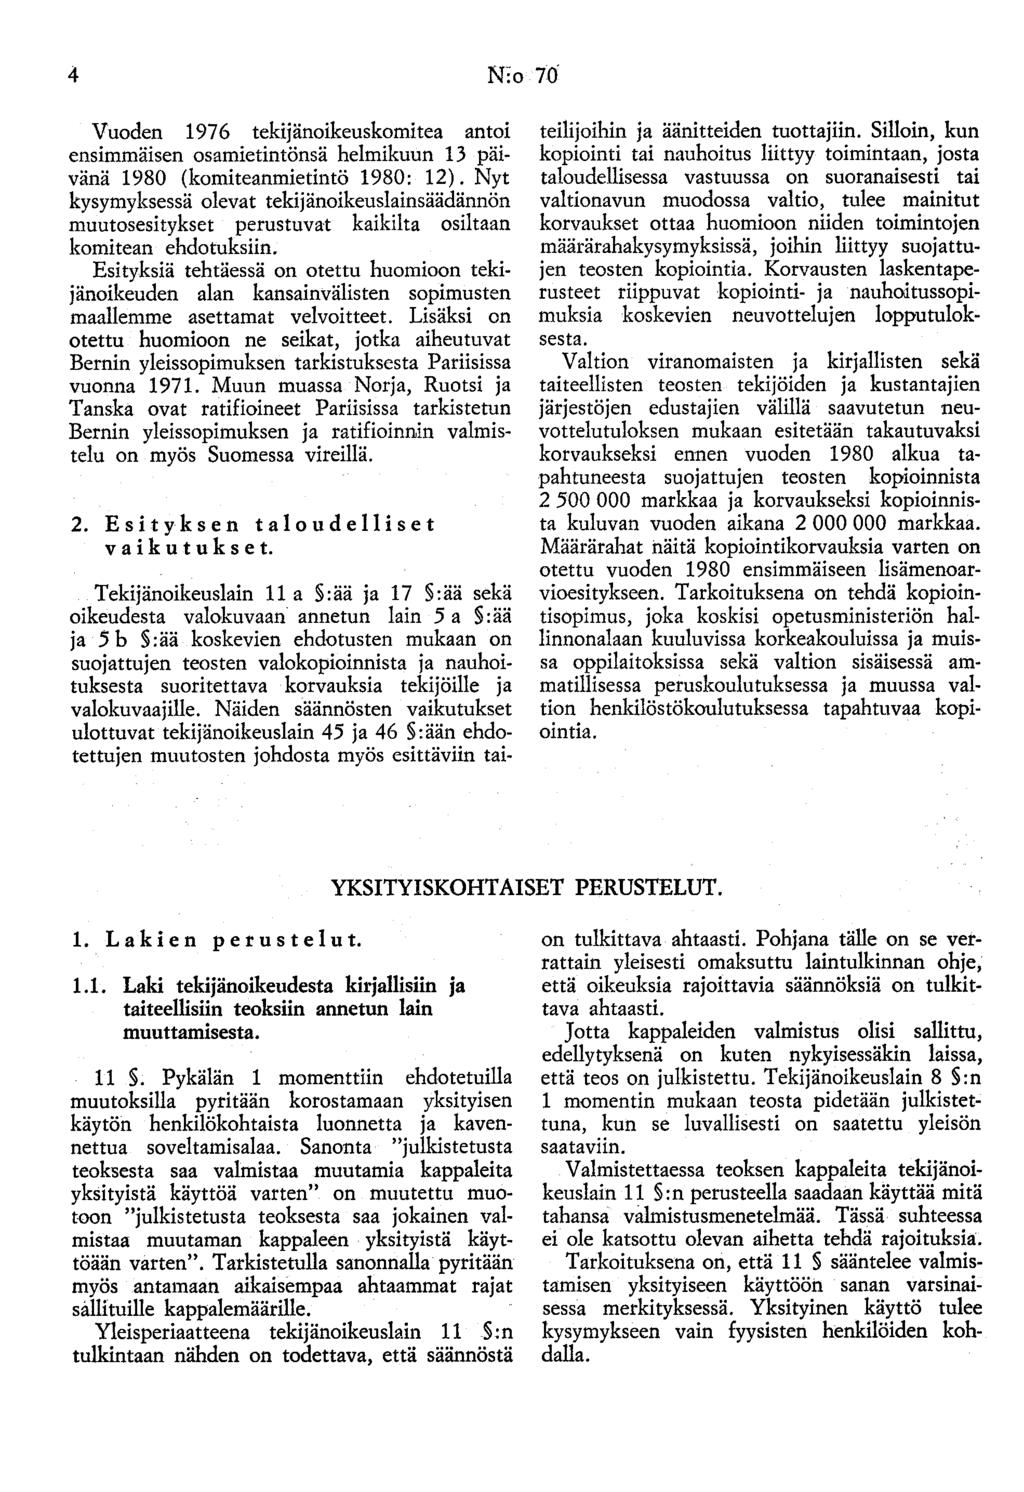 4 N:o 70 Vuoden 197 6 tekijänoikeuskomitea antoi ensimmäisen osamietintönsä helmikuun 13 päivänä 1980 (komiteanmietintö 1980: 12).